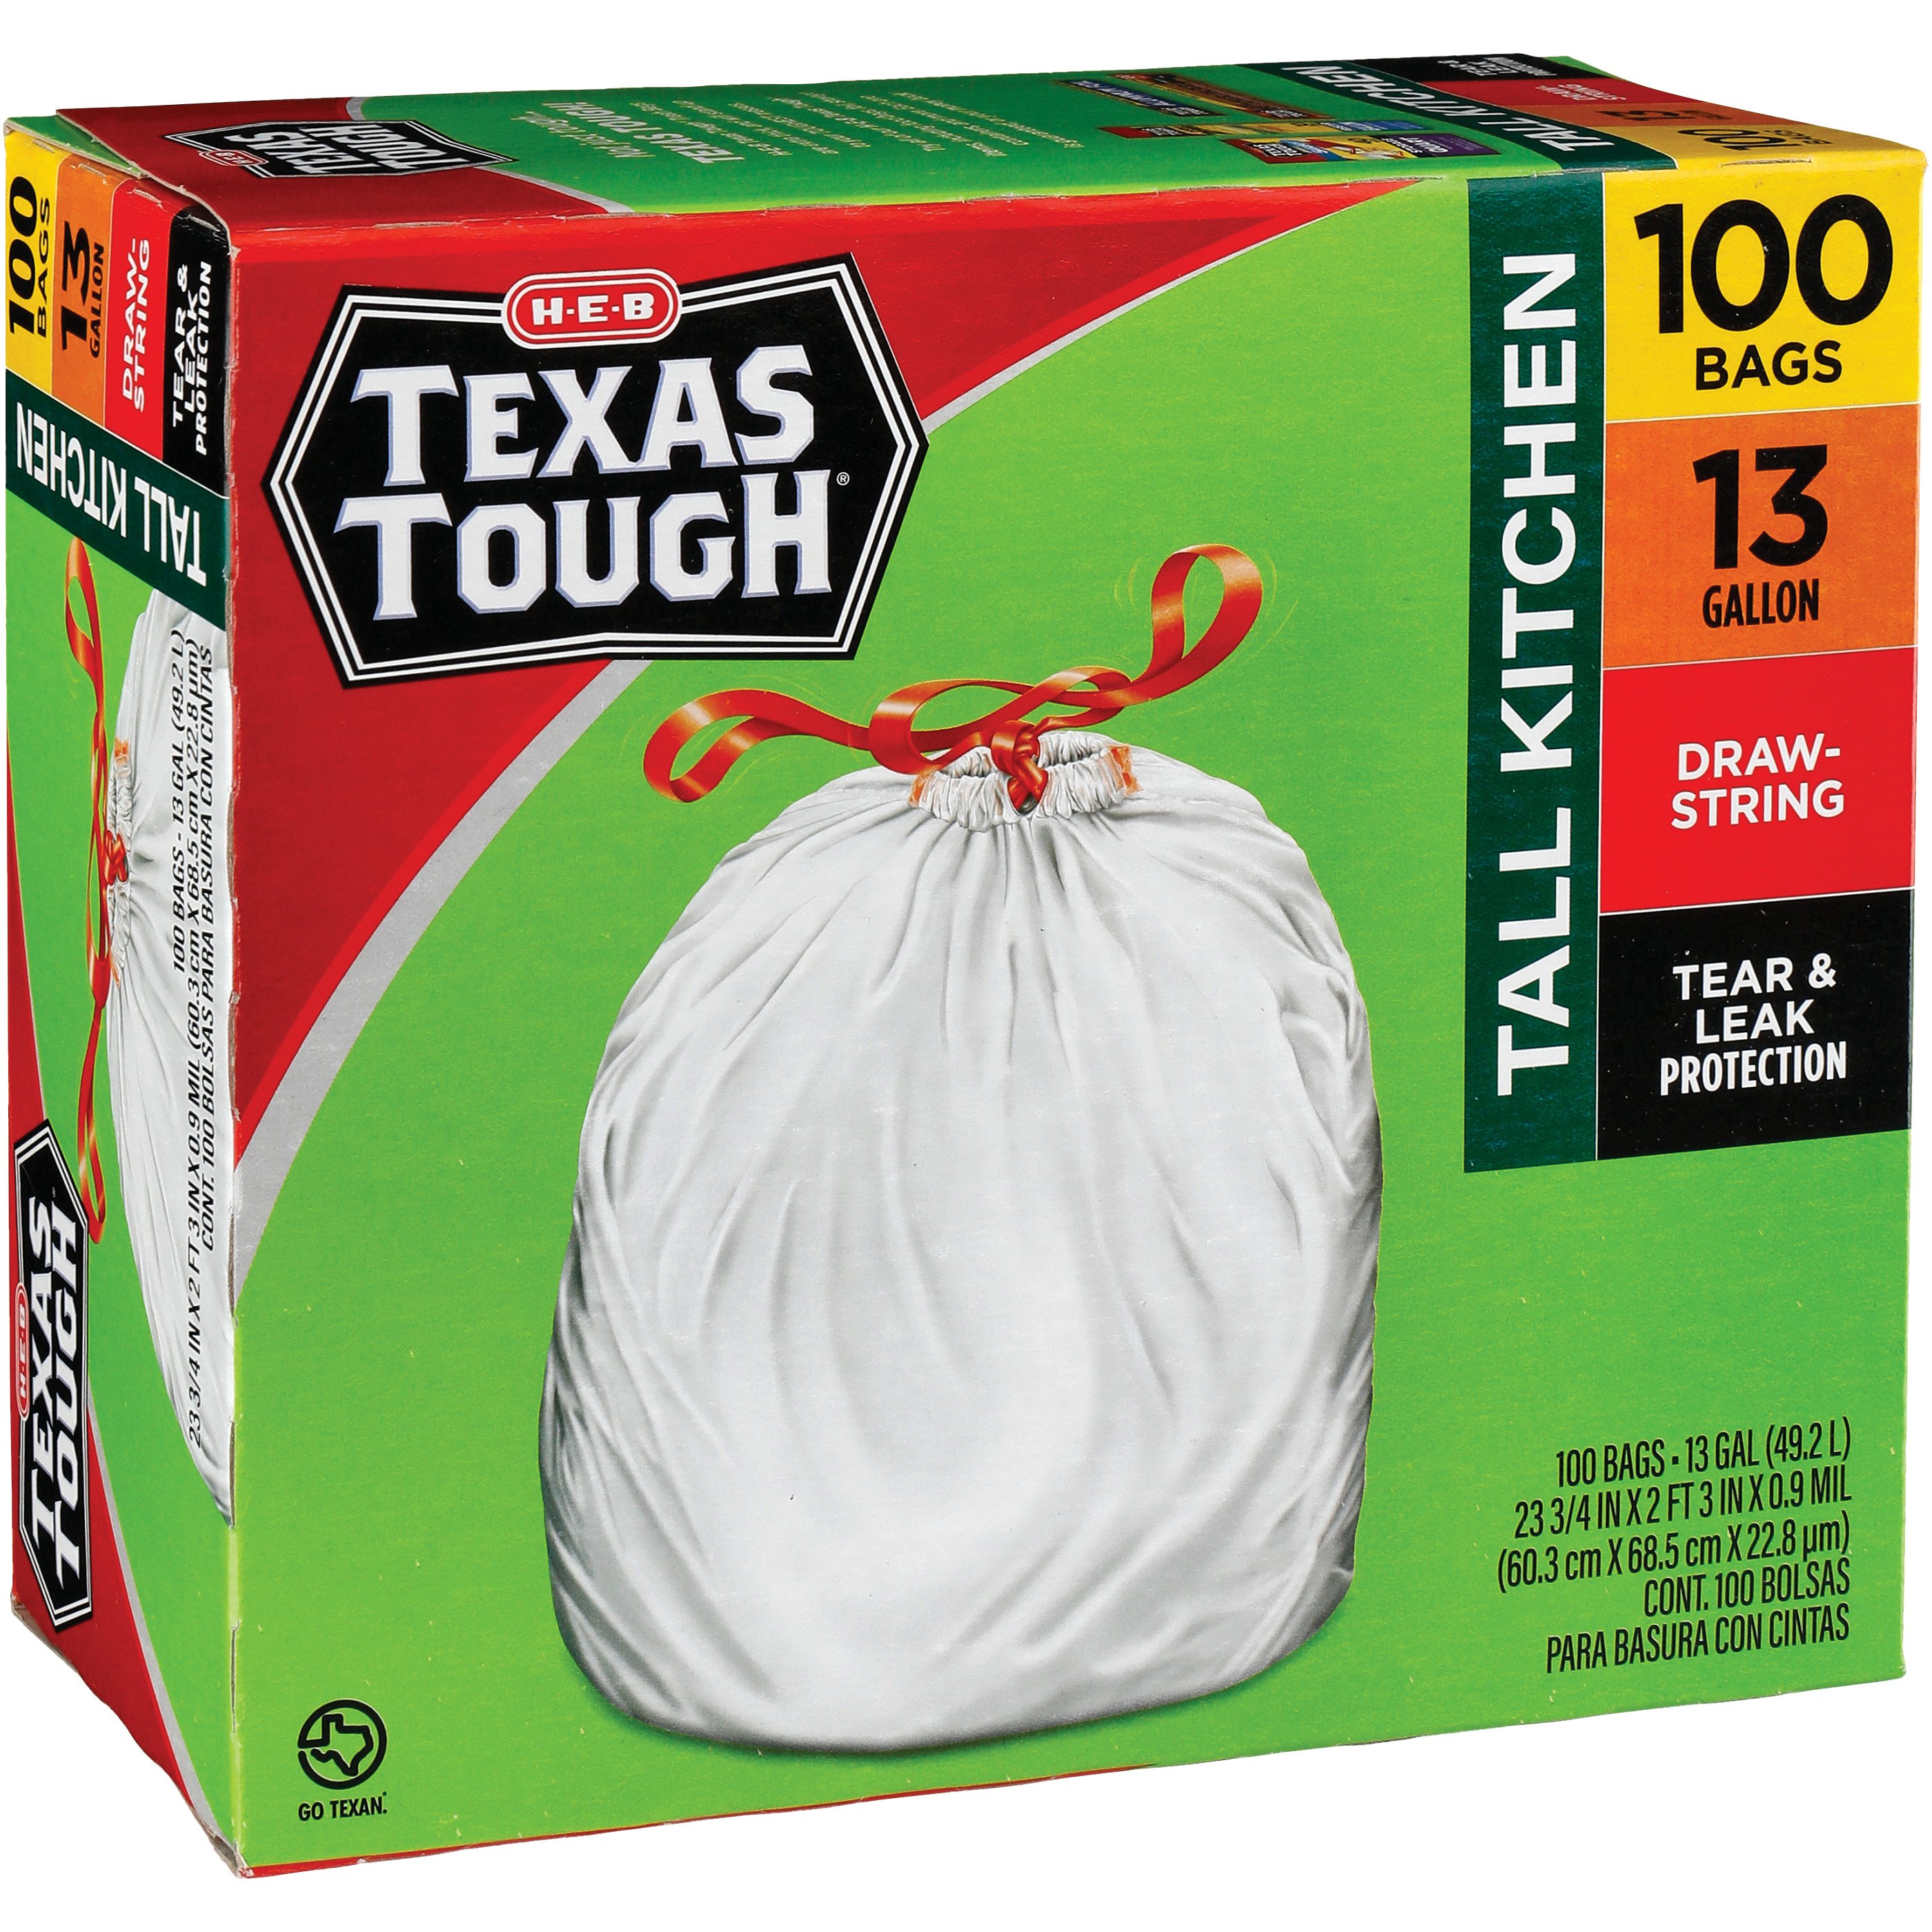 H-E-B Texas Tough Contractor Trash Bags, 42 Gallon - Shop Trash